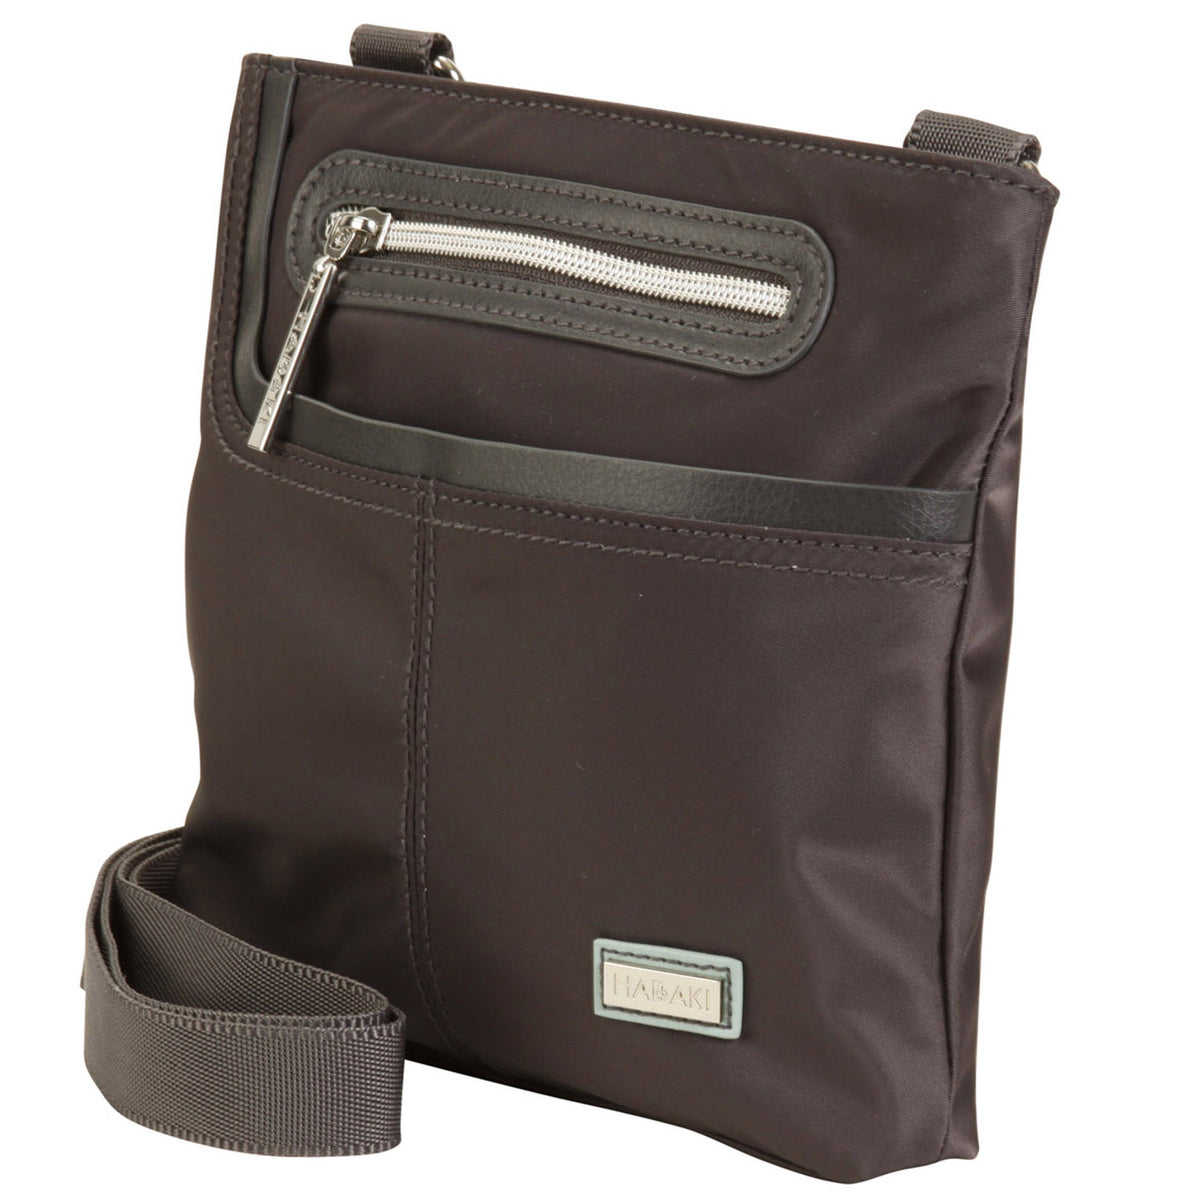 Hadaki Mini Me Asphalt crossbody bag with a zippered pocket.